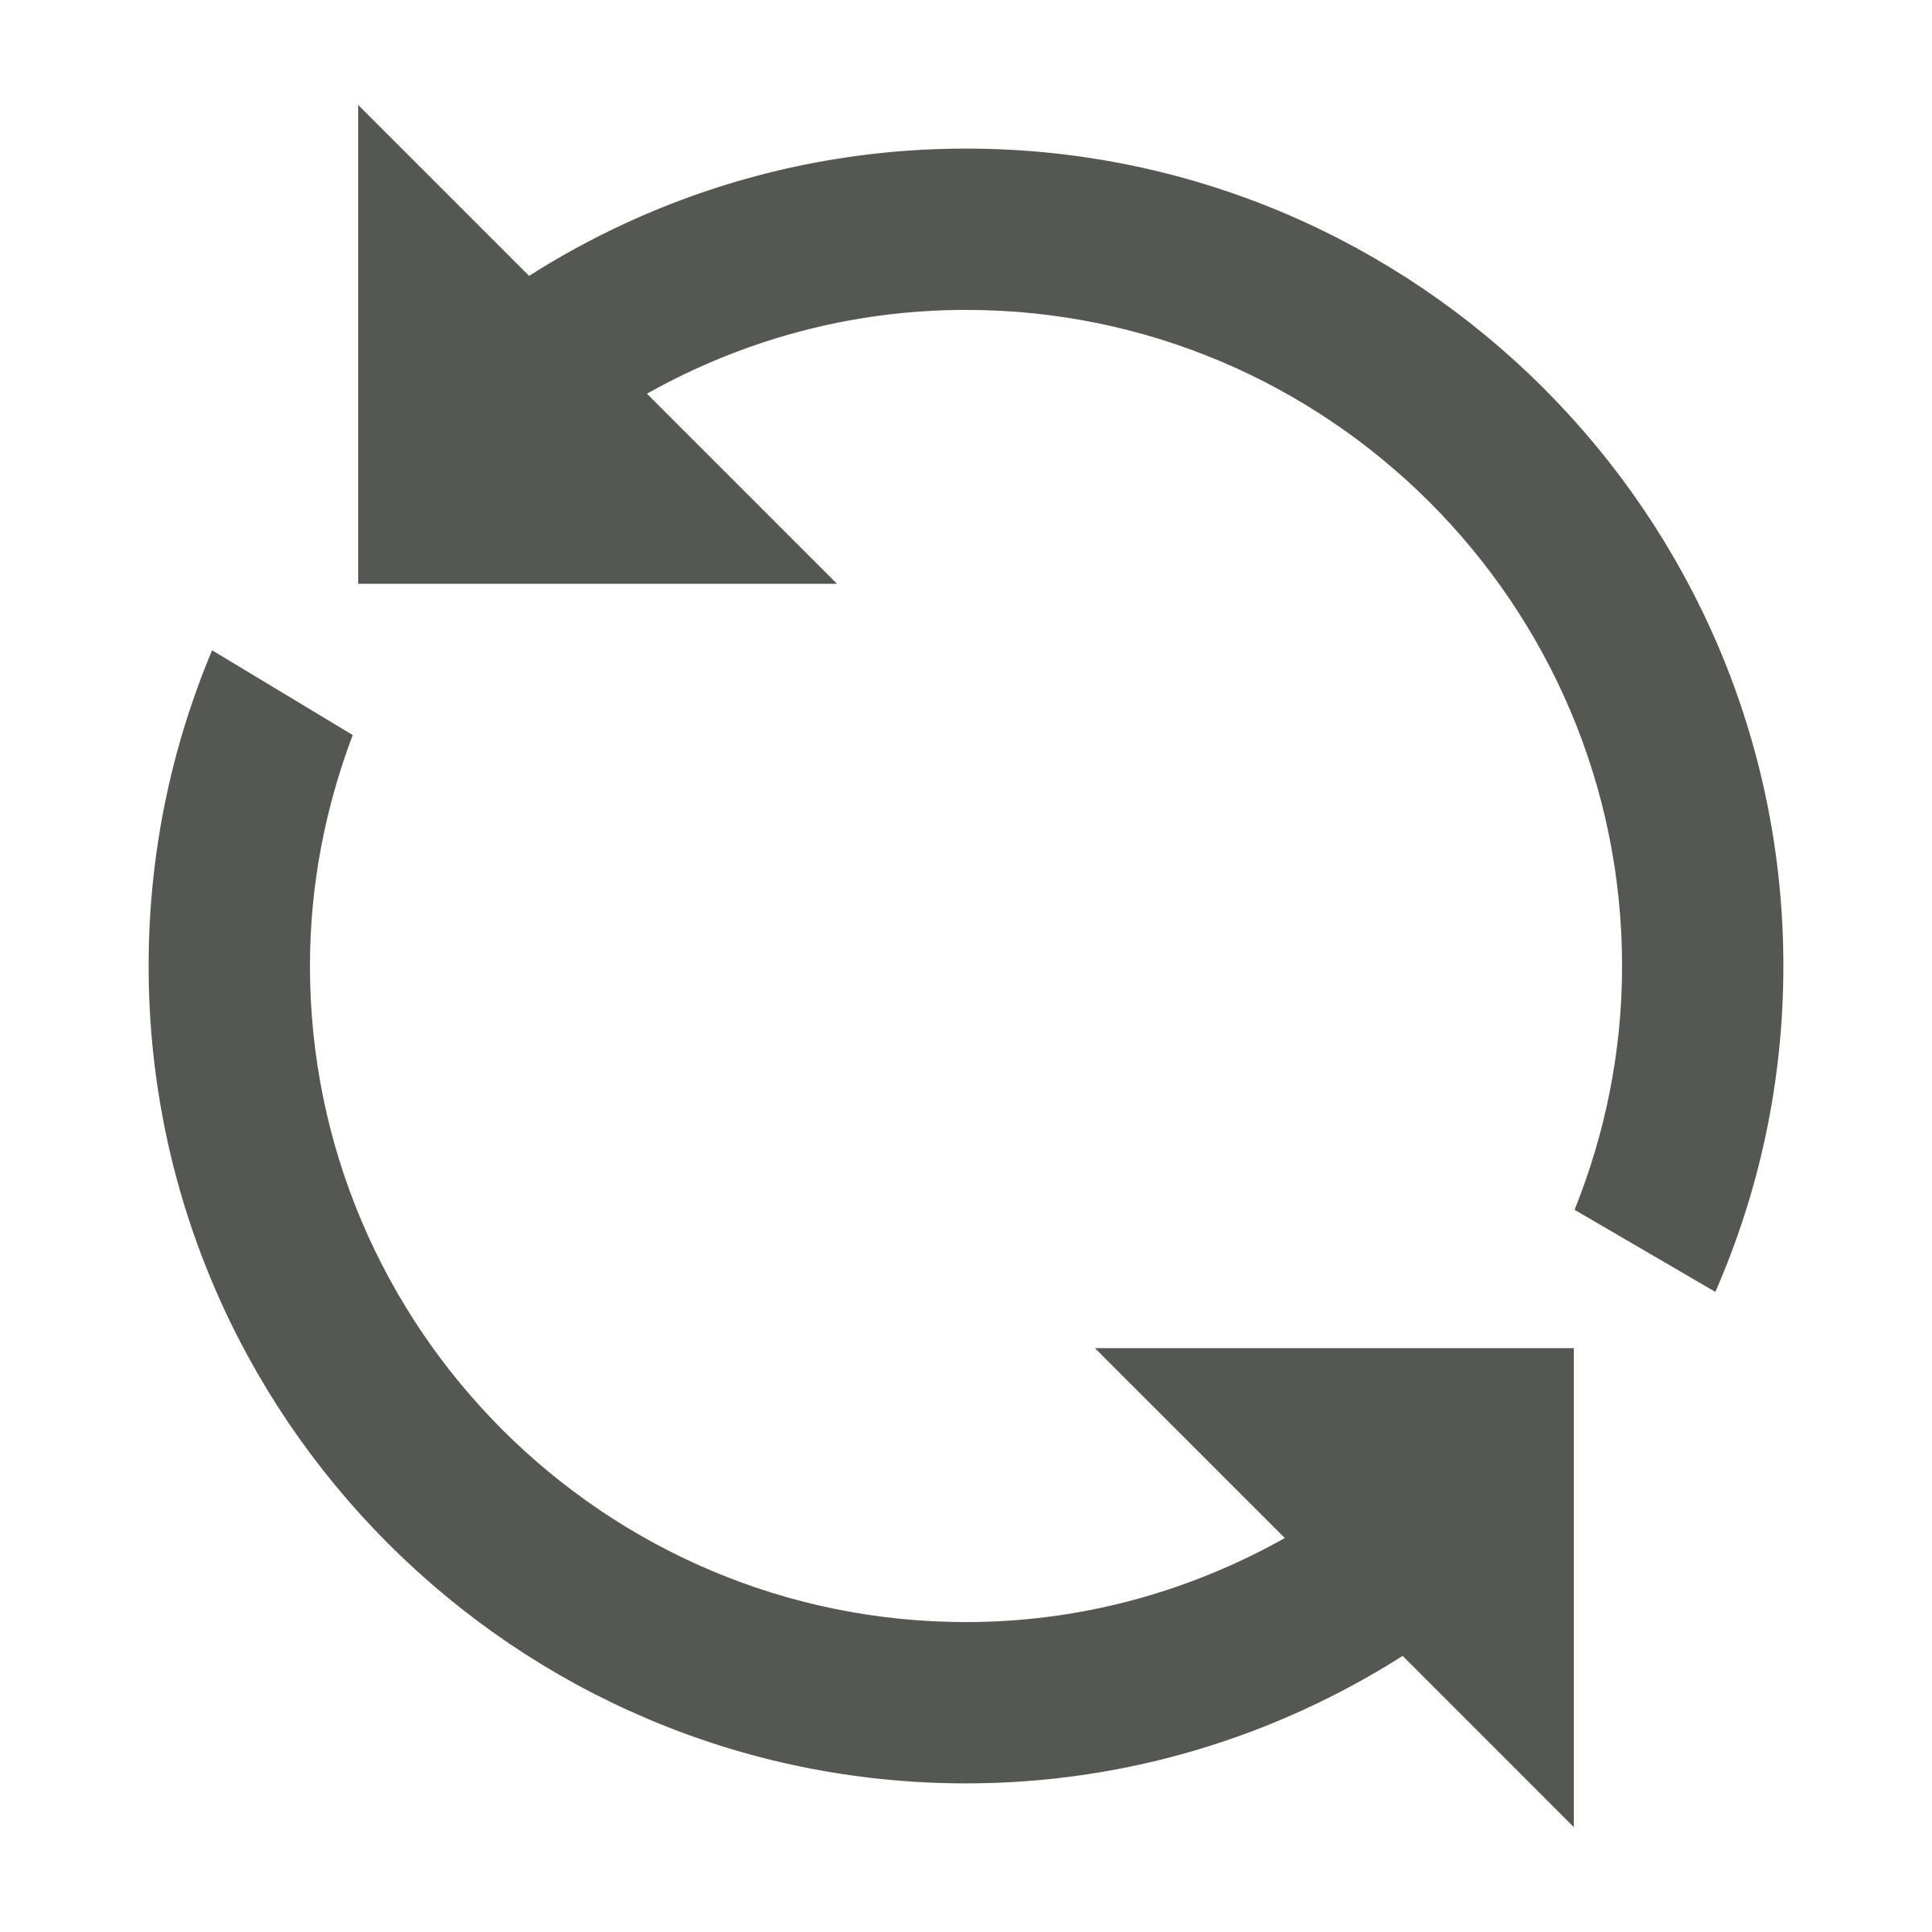 Font,Symbol,Logo,Circle,Crescent,Graphics